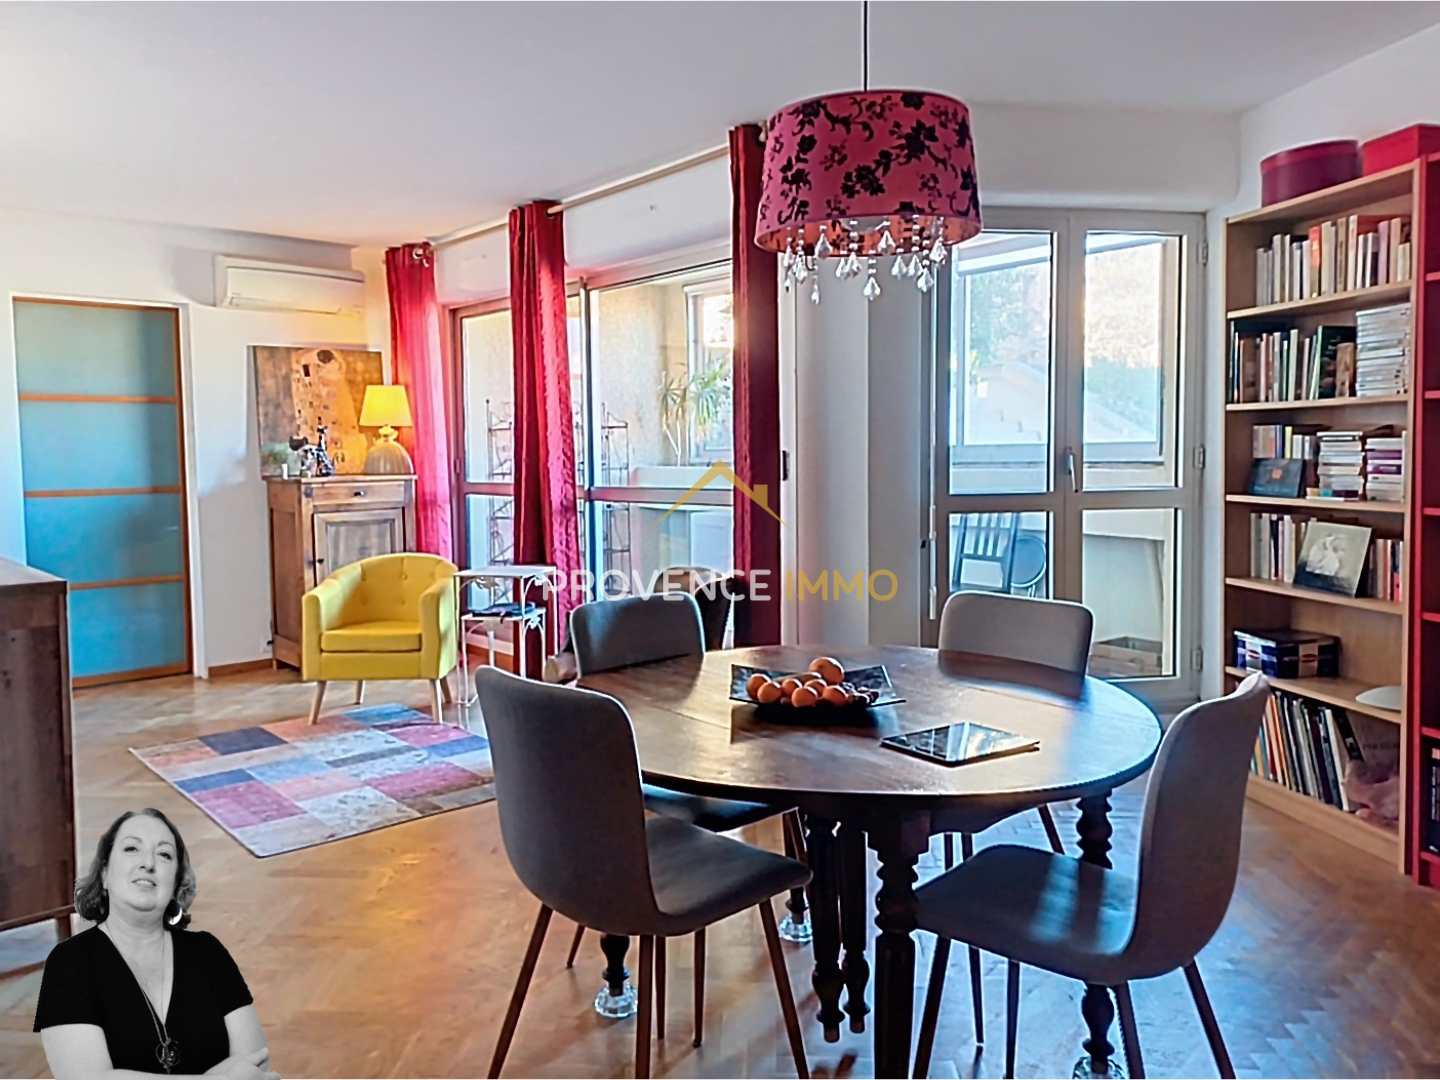 Vente Appartement 82m² 4 Pièces à Salon-de-Provence (13300) - Réseau Expertimo